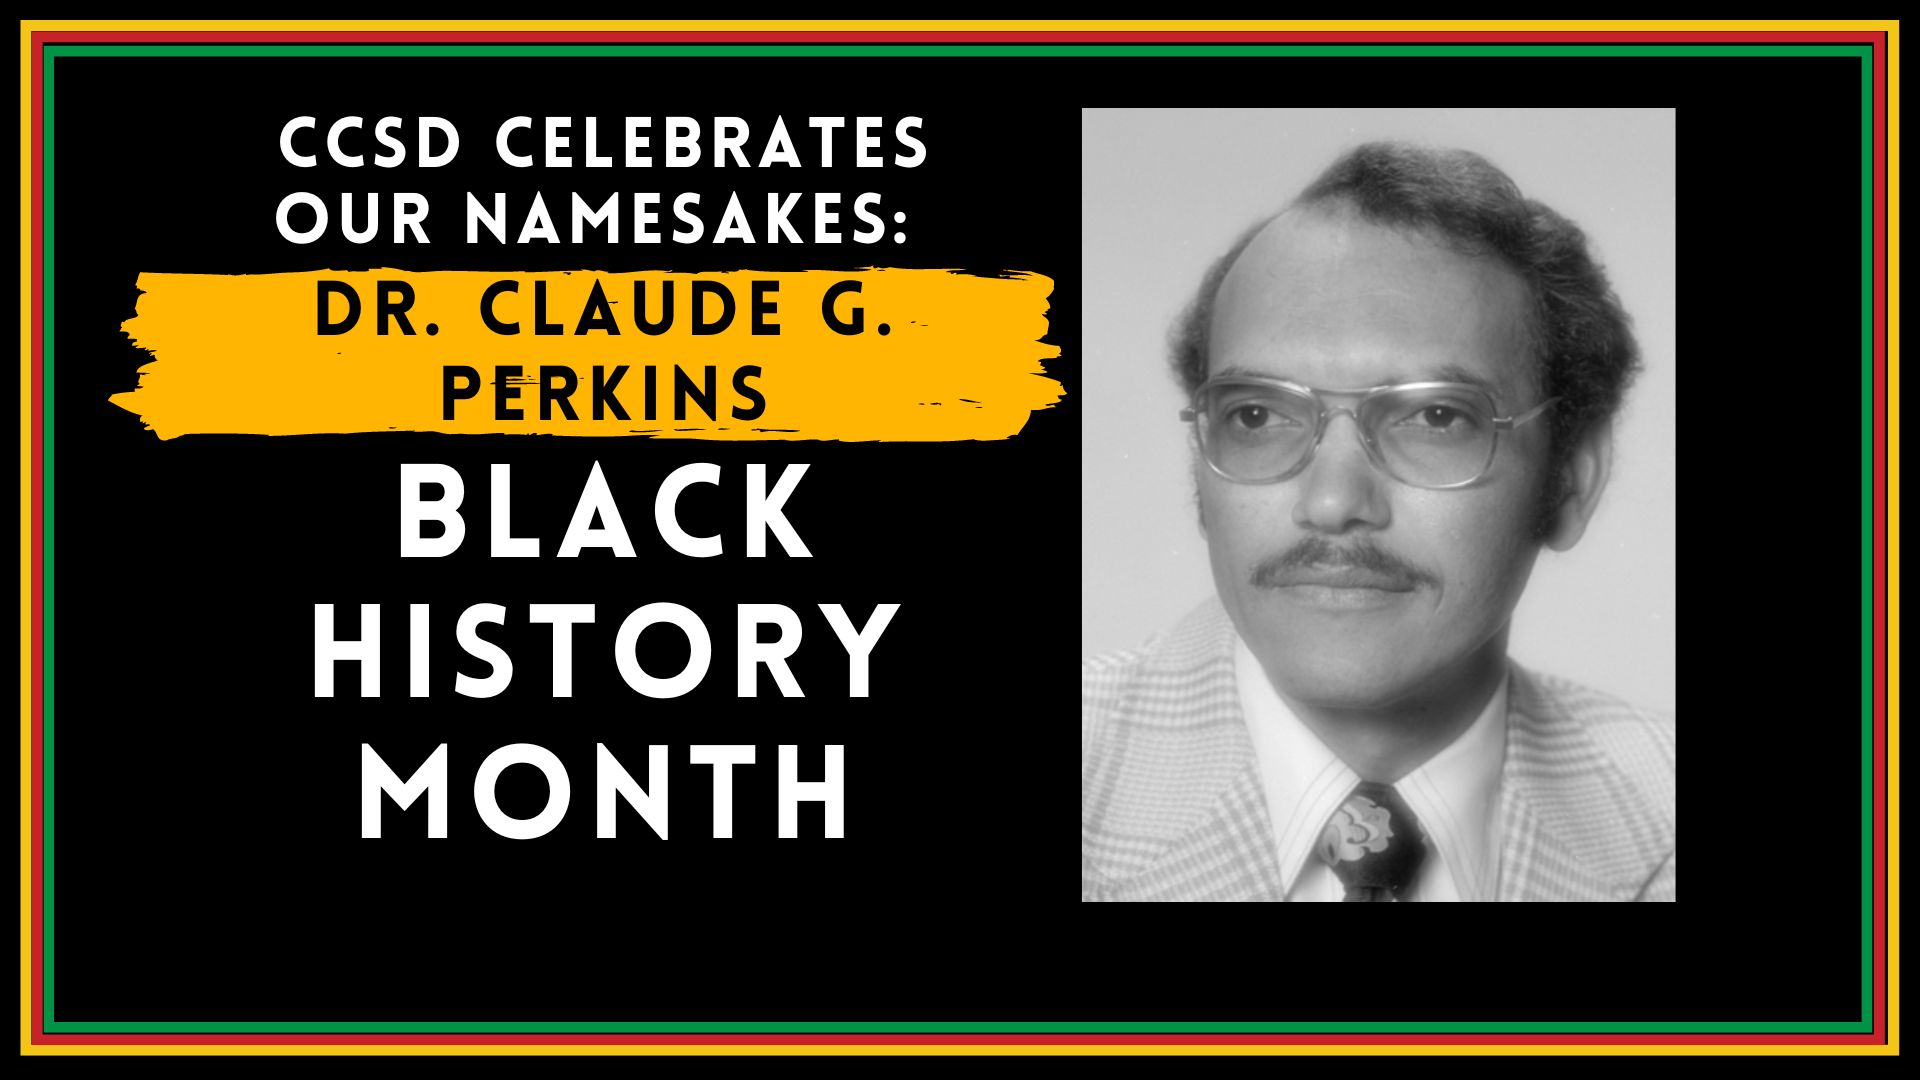 Celebrating CCSD leaders: Dr. Claude G. Perkins